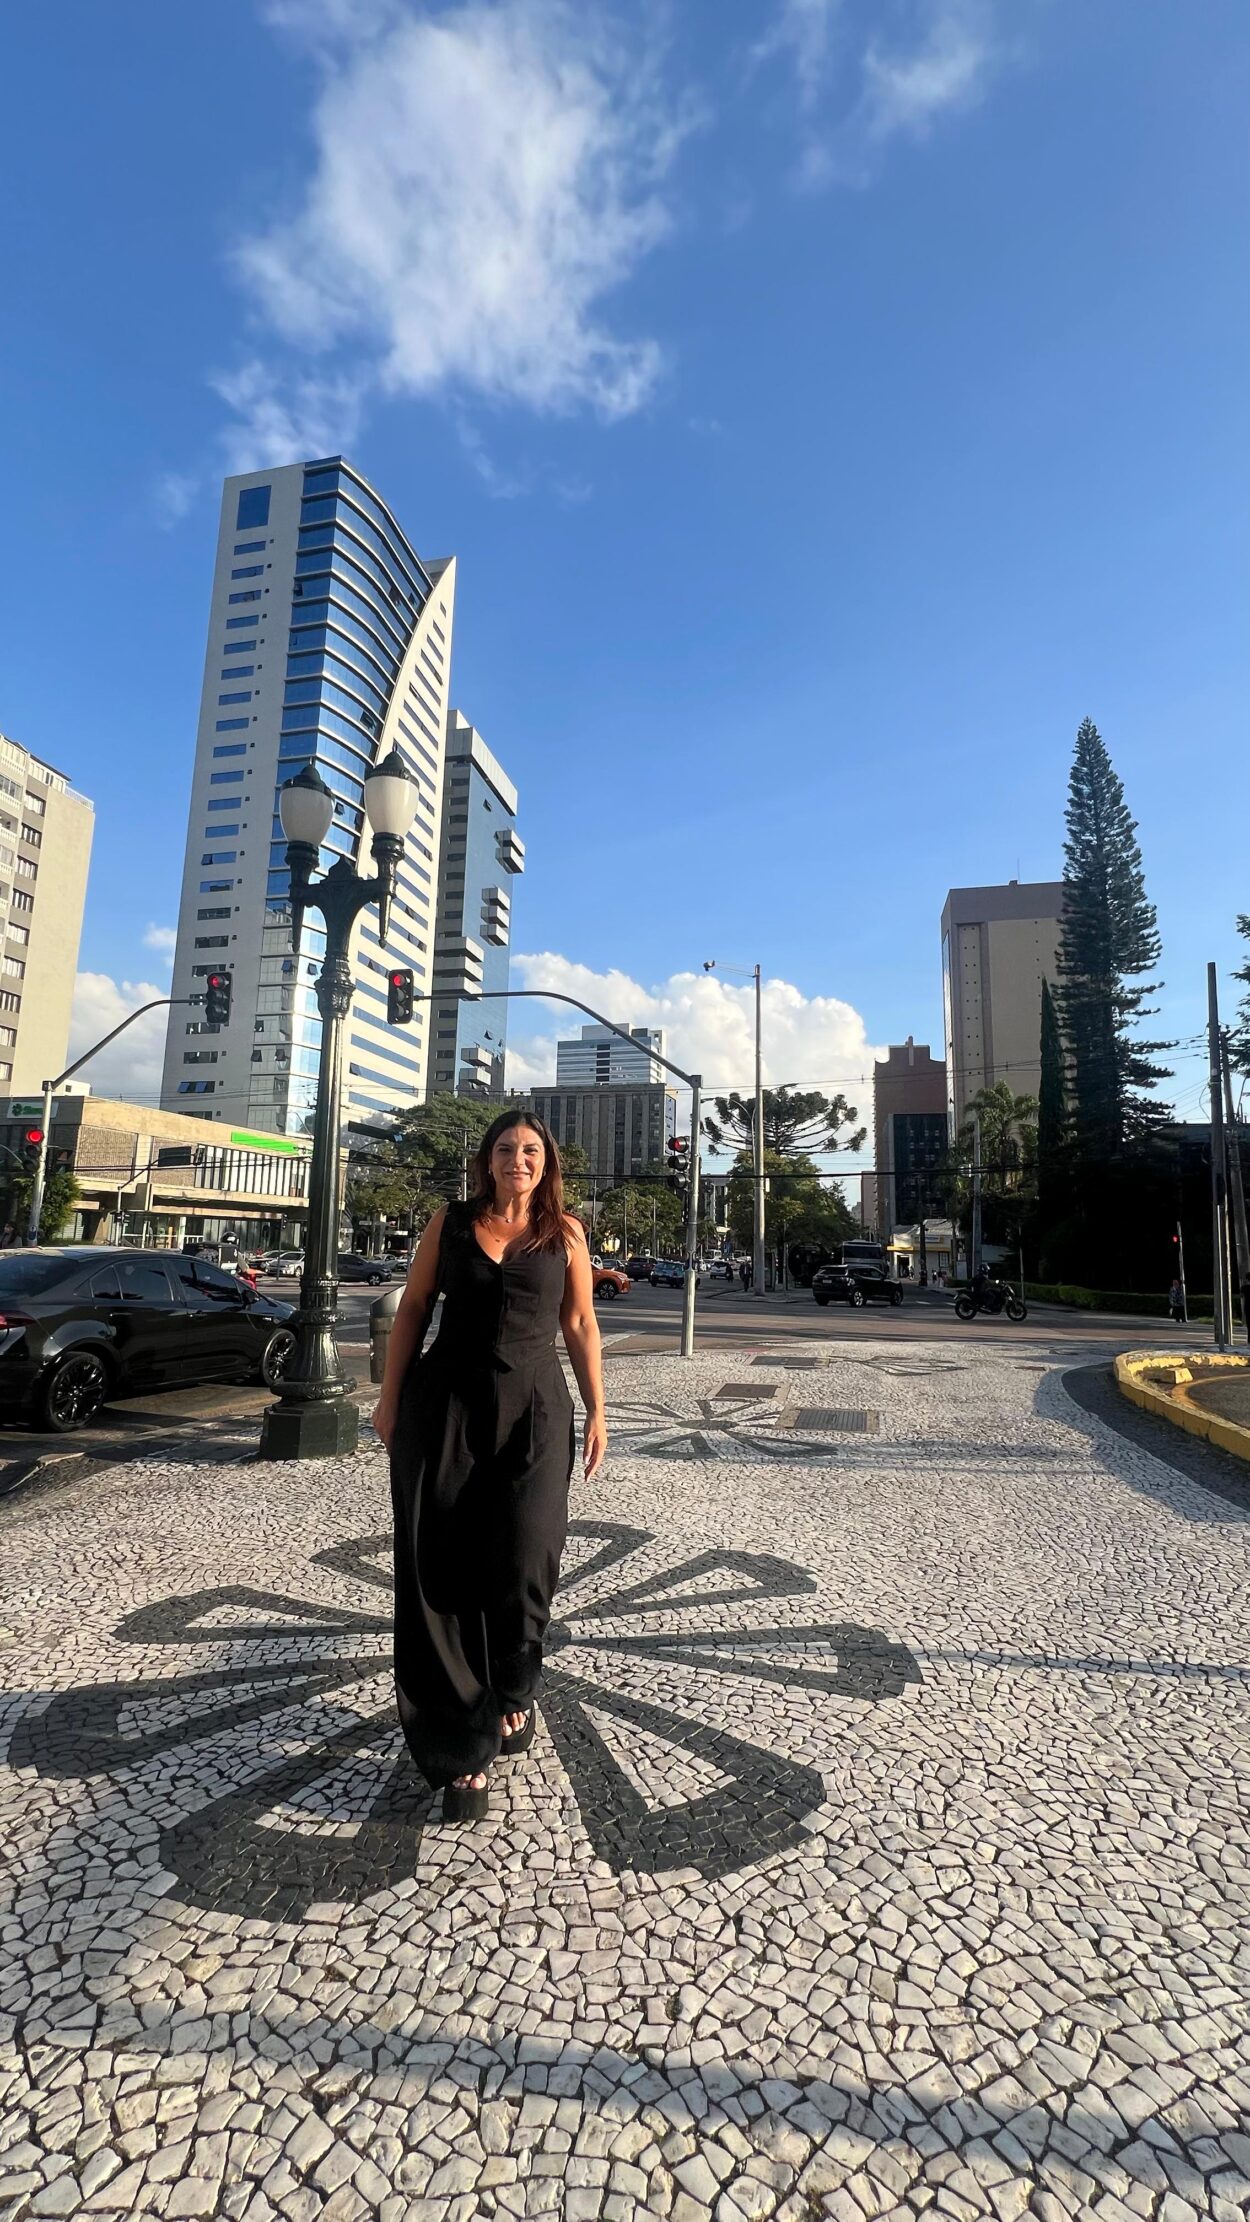 Para apuntar a ciudades "inteligentes" como Curitiba, desarrolladora inmobiliaria orienta proyectos que mixturan innovación tecnológica con entornos amigables imagen-8